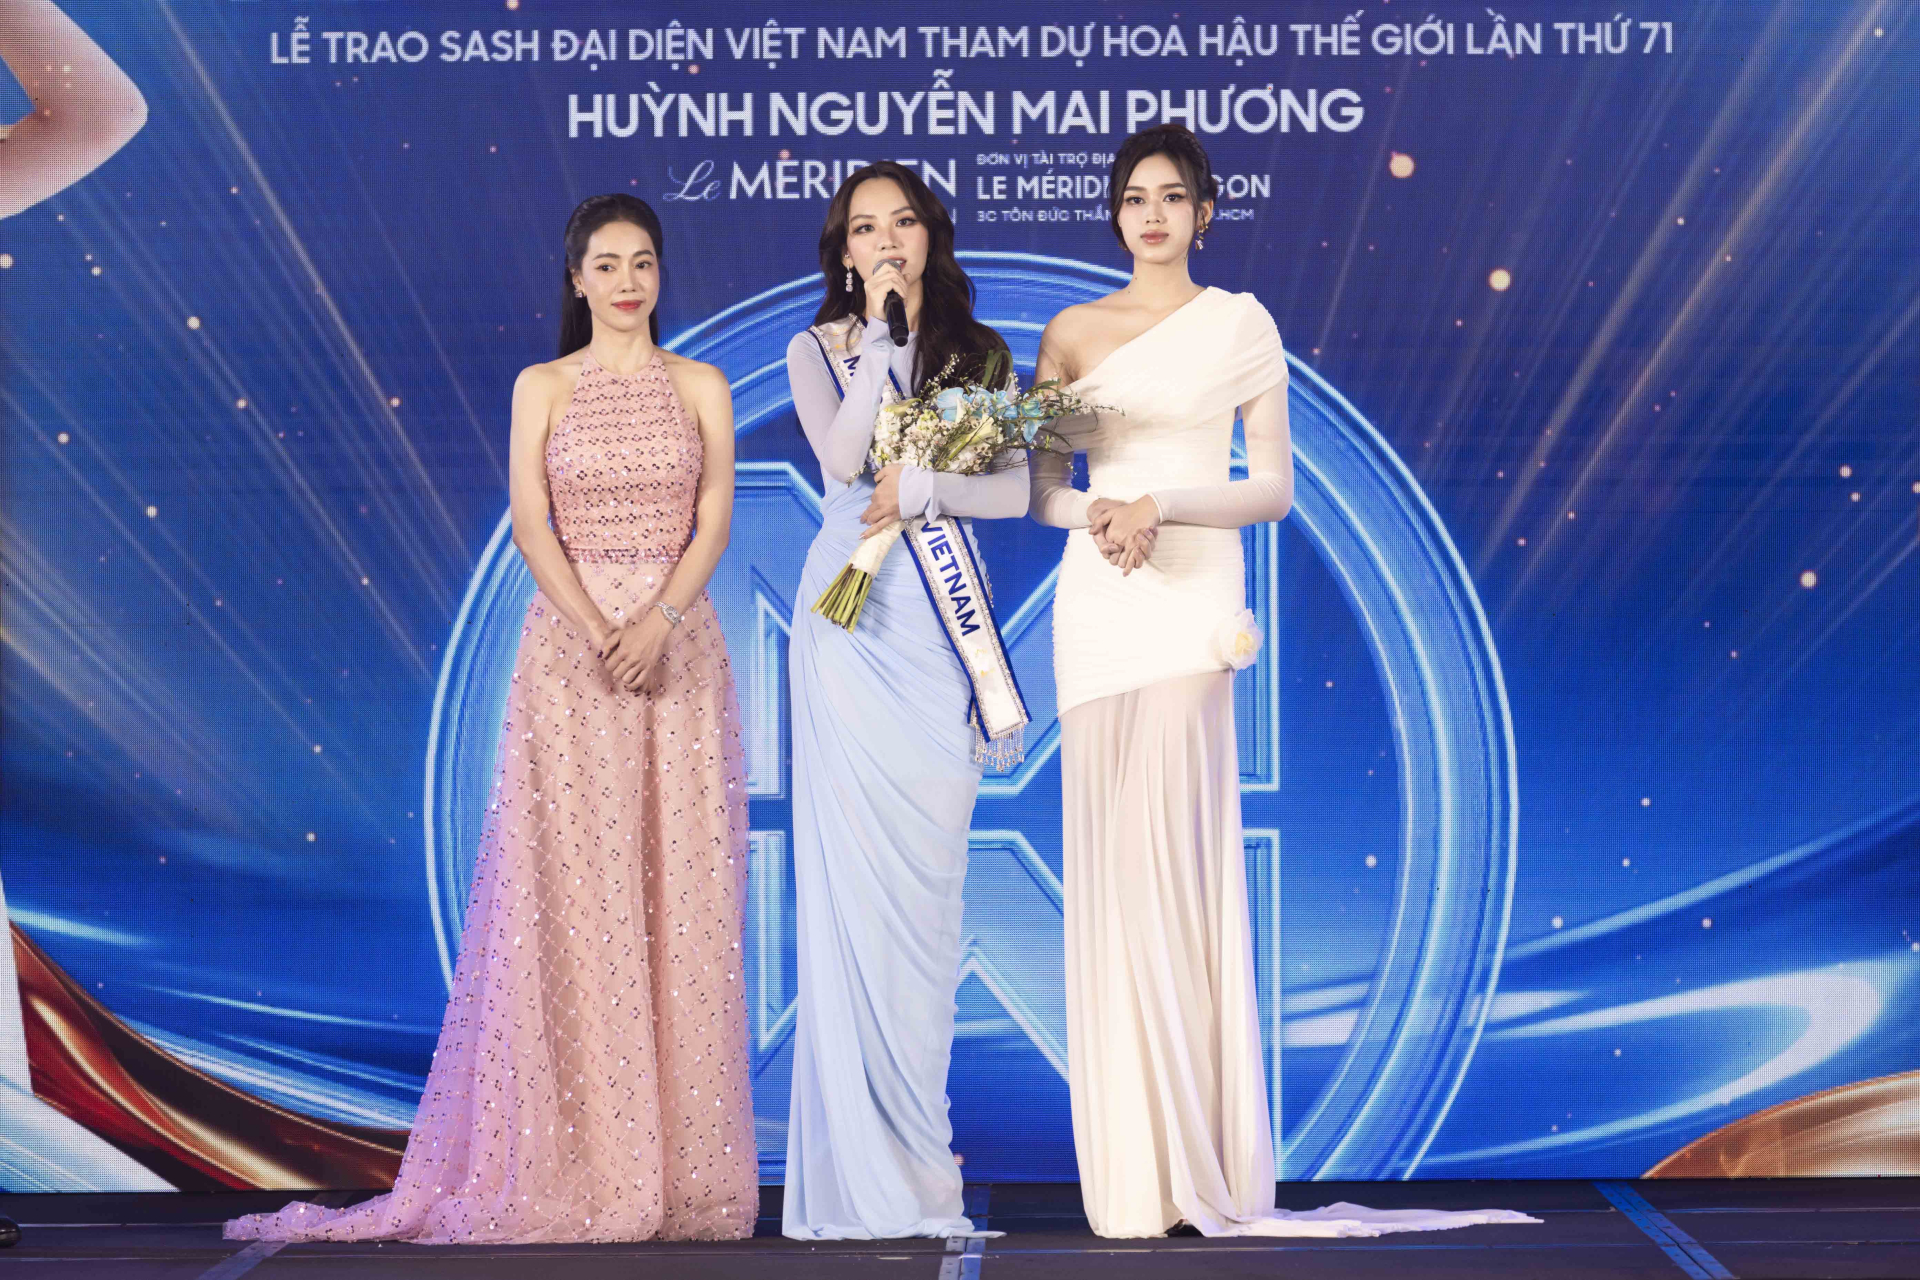 Toàn cảnh lễ trao sash của Hoa hậu Mai Phương, nhan sắc và tài năng ngày càng thăng hạng - ảnh 1